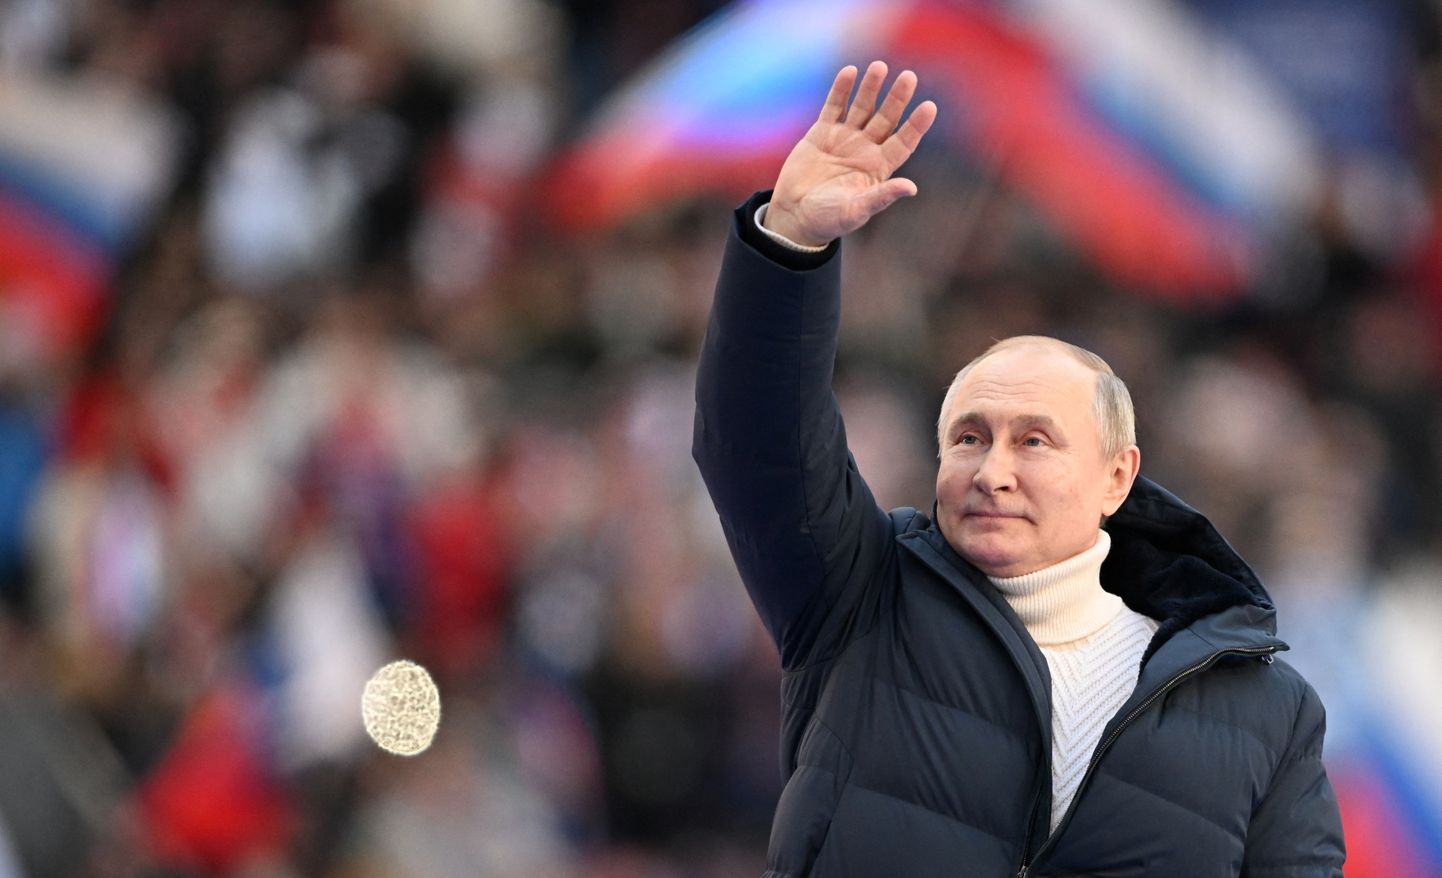 Venemaa president Vladimir Putin lehvitamas rahvale 18. märtsil 2022 Moskvas Lužniki staadionil, kus tähistati Krimmi annekteerimise kaheksandat aastapäeva